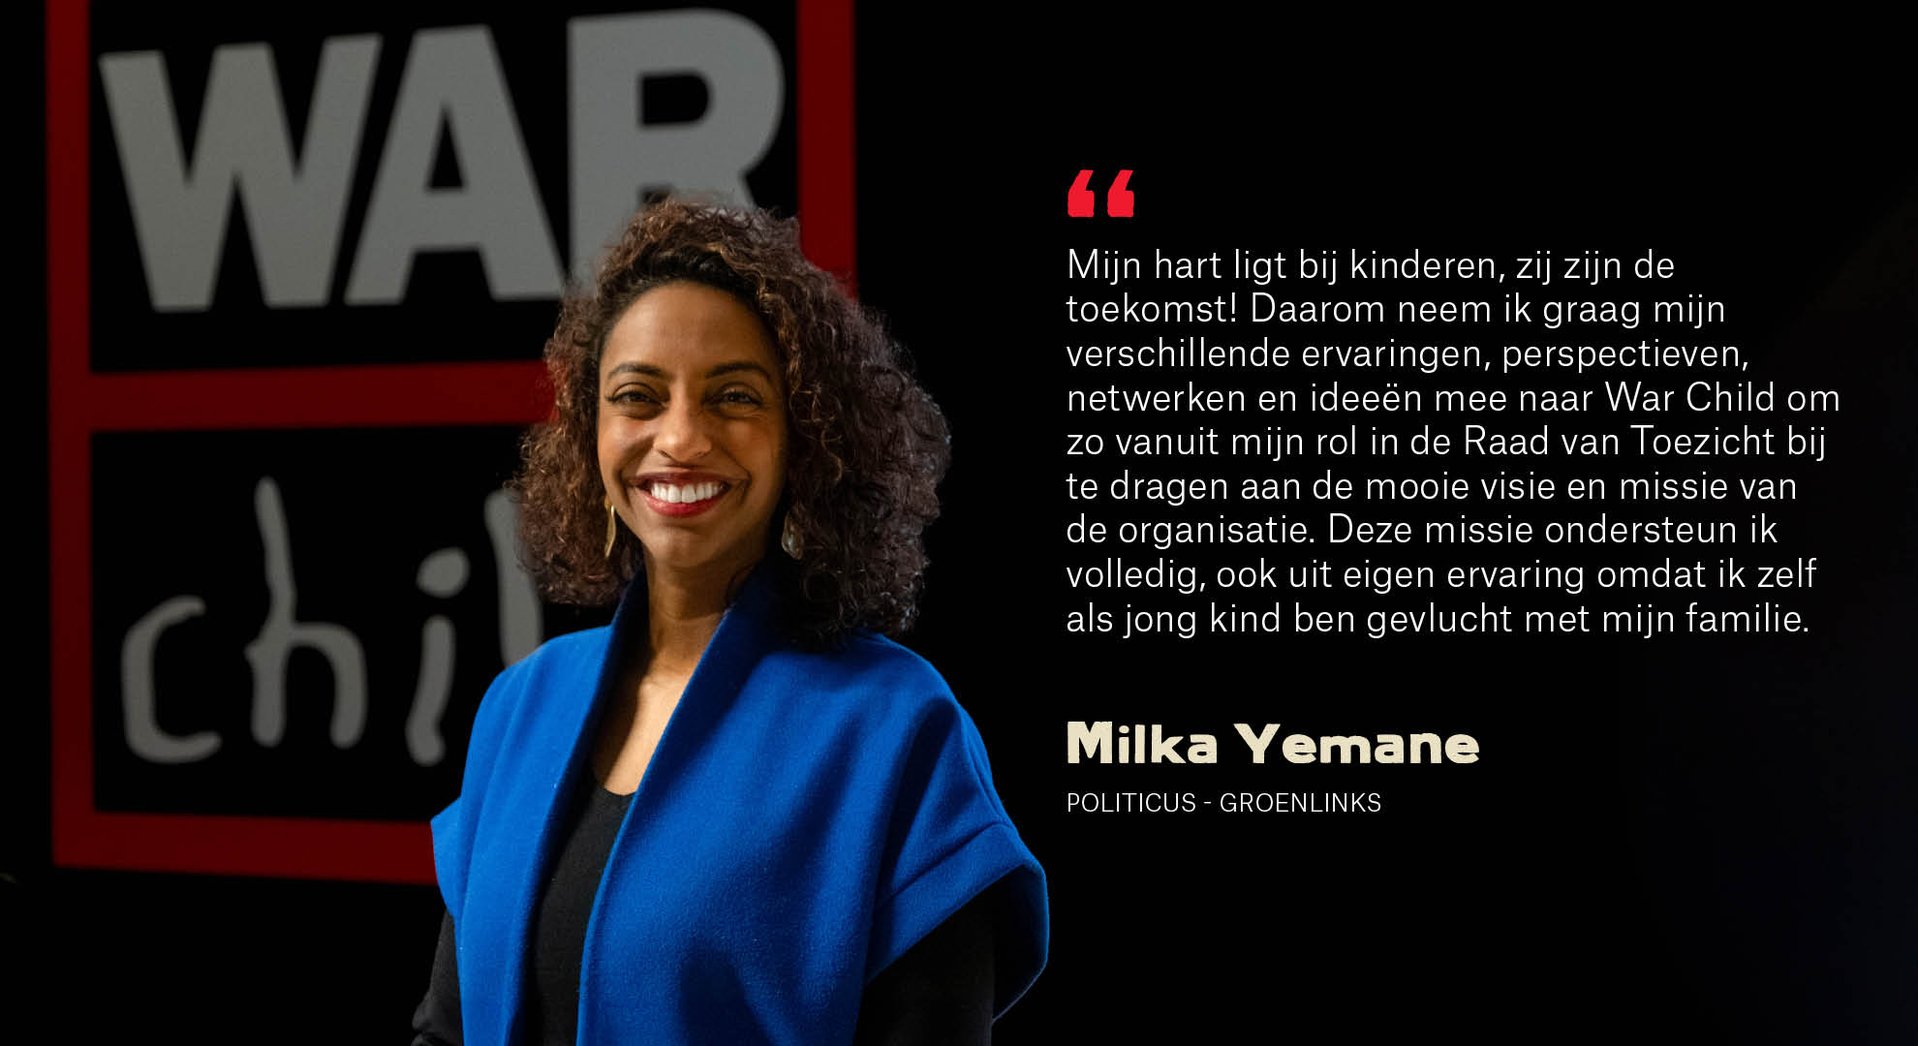 Milka Yemane